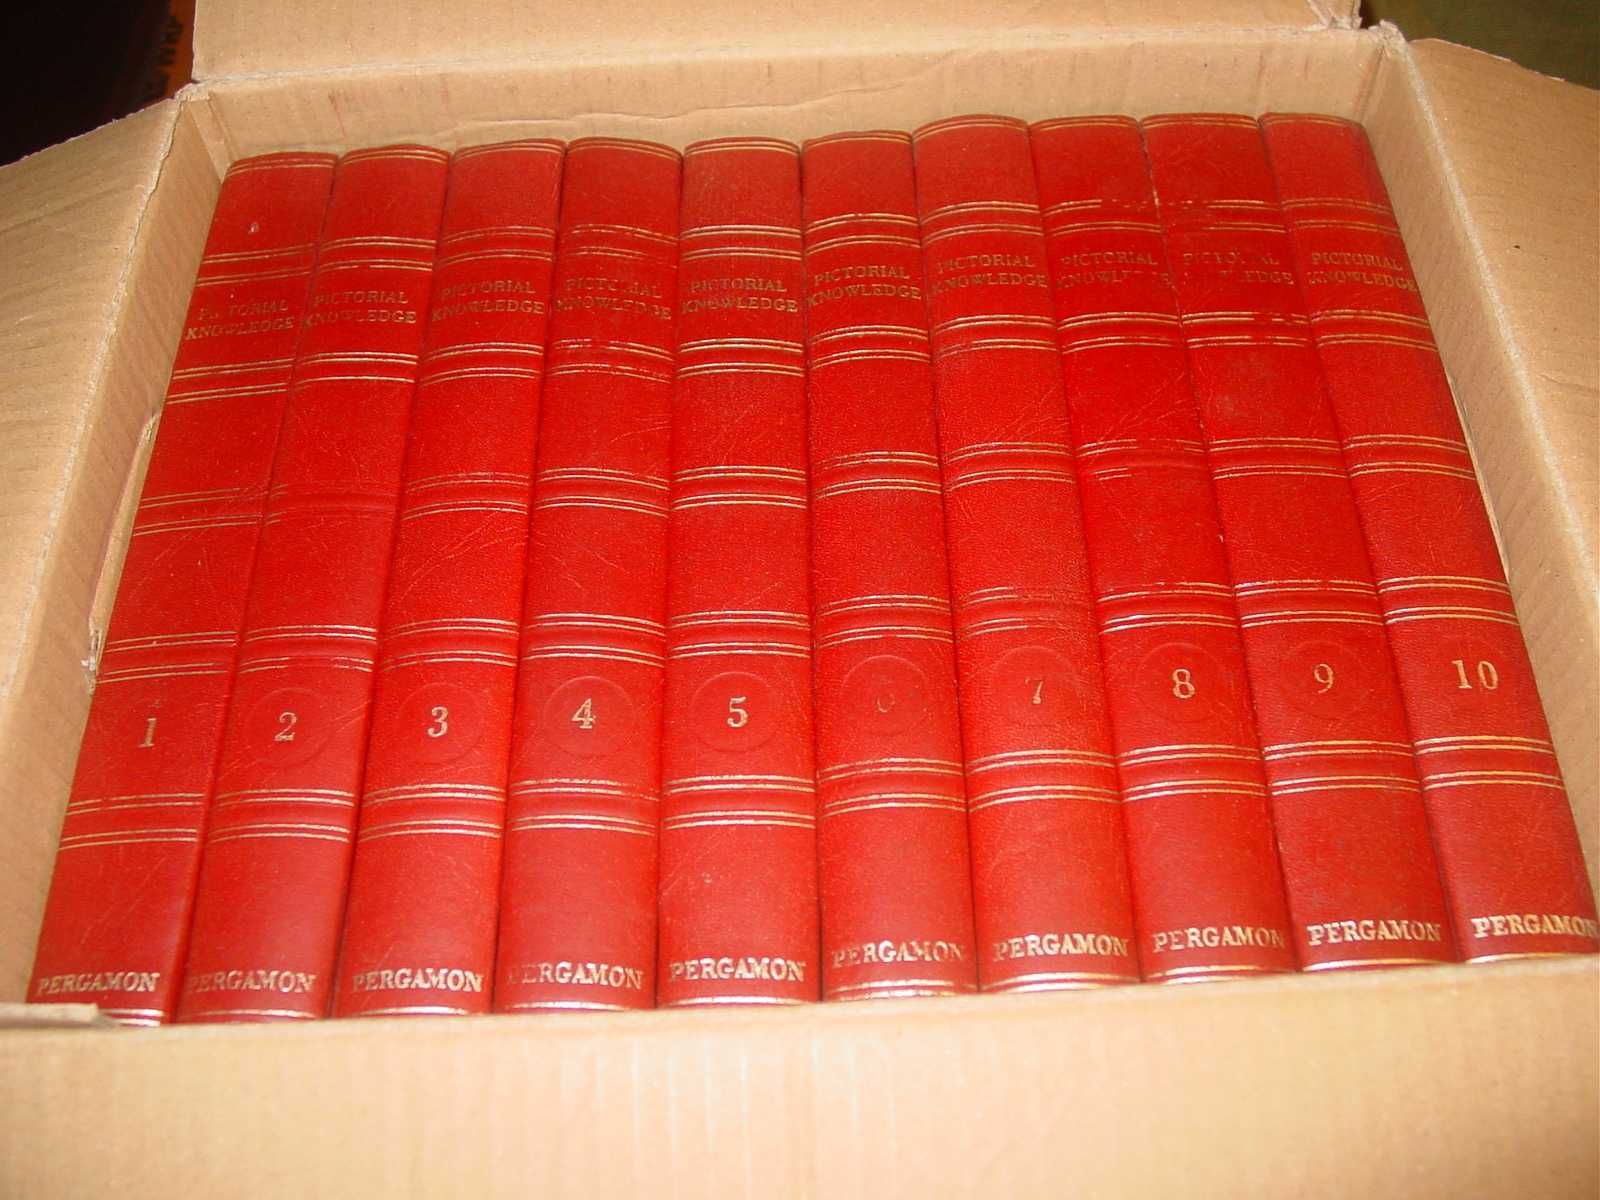 Enciclopédia: "Pictorial Knowledge" - 10 volumes